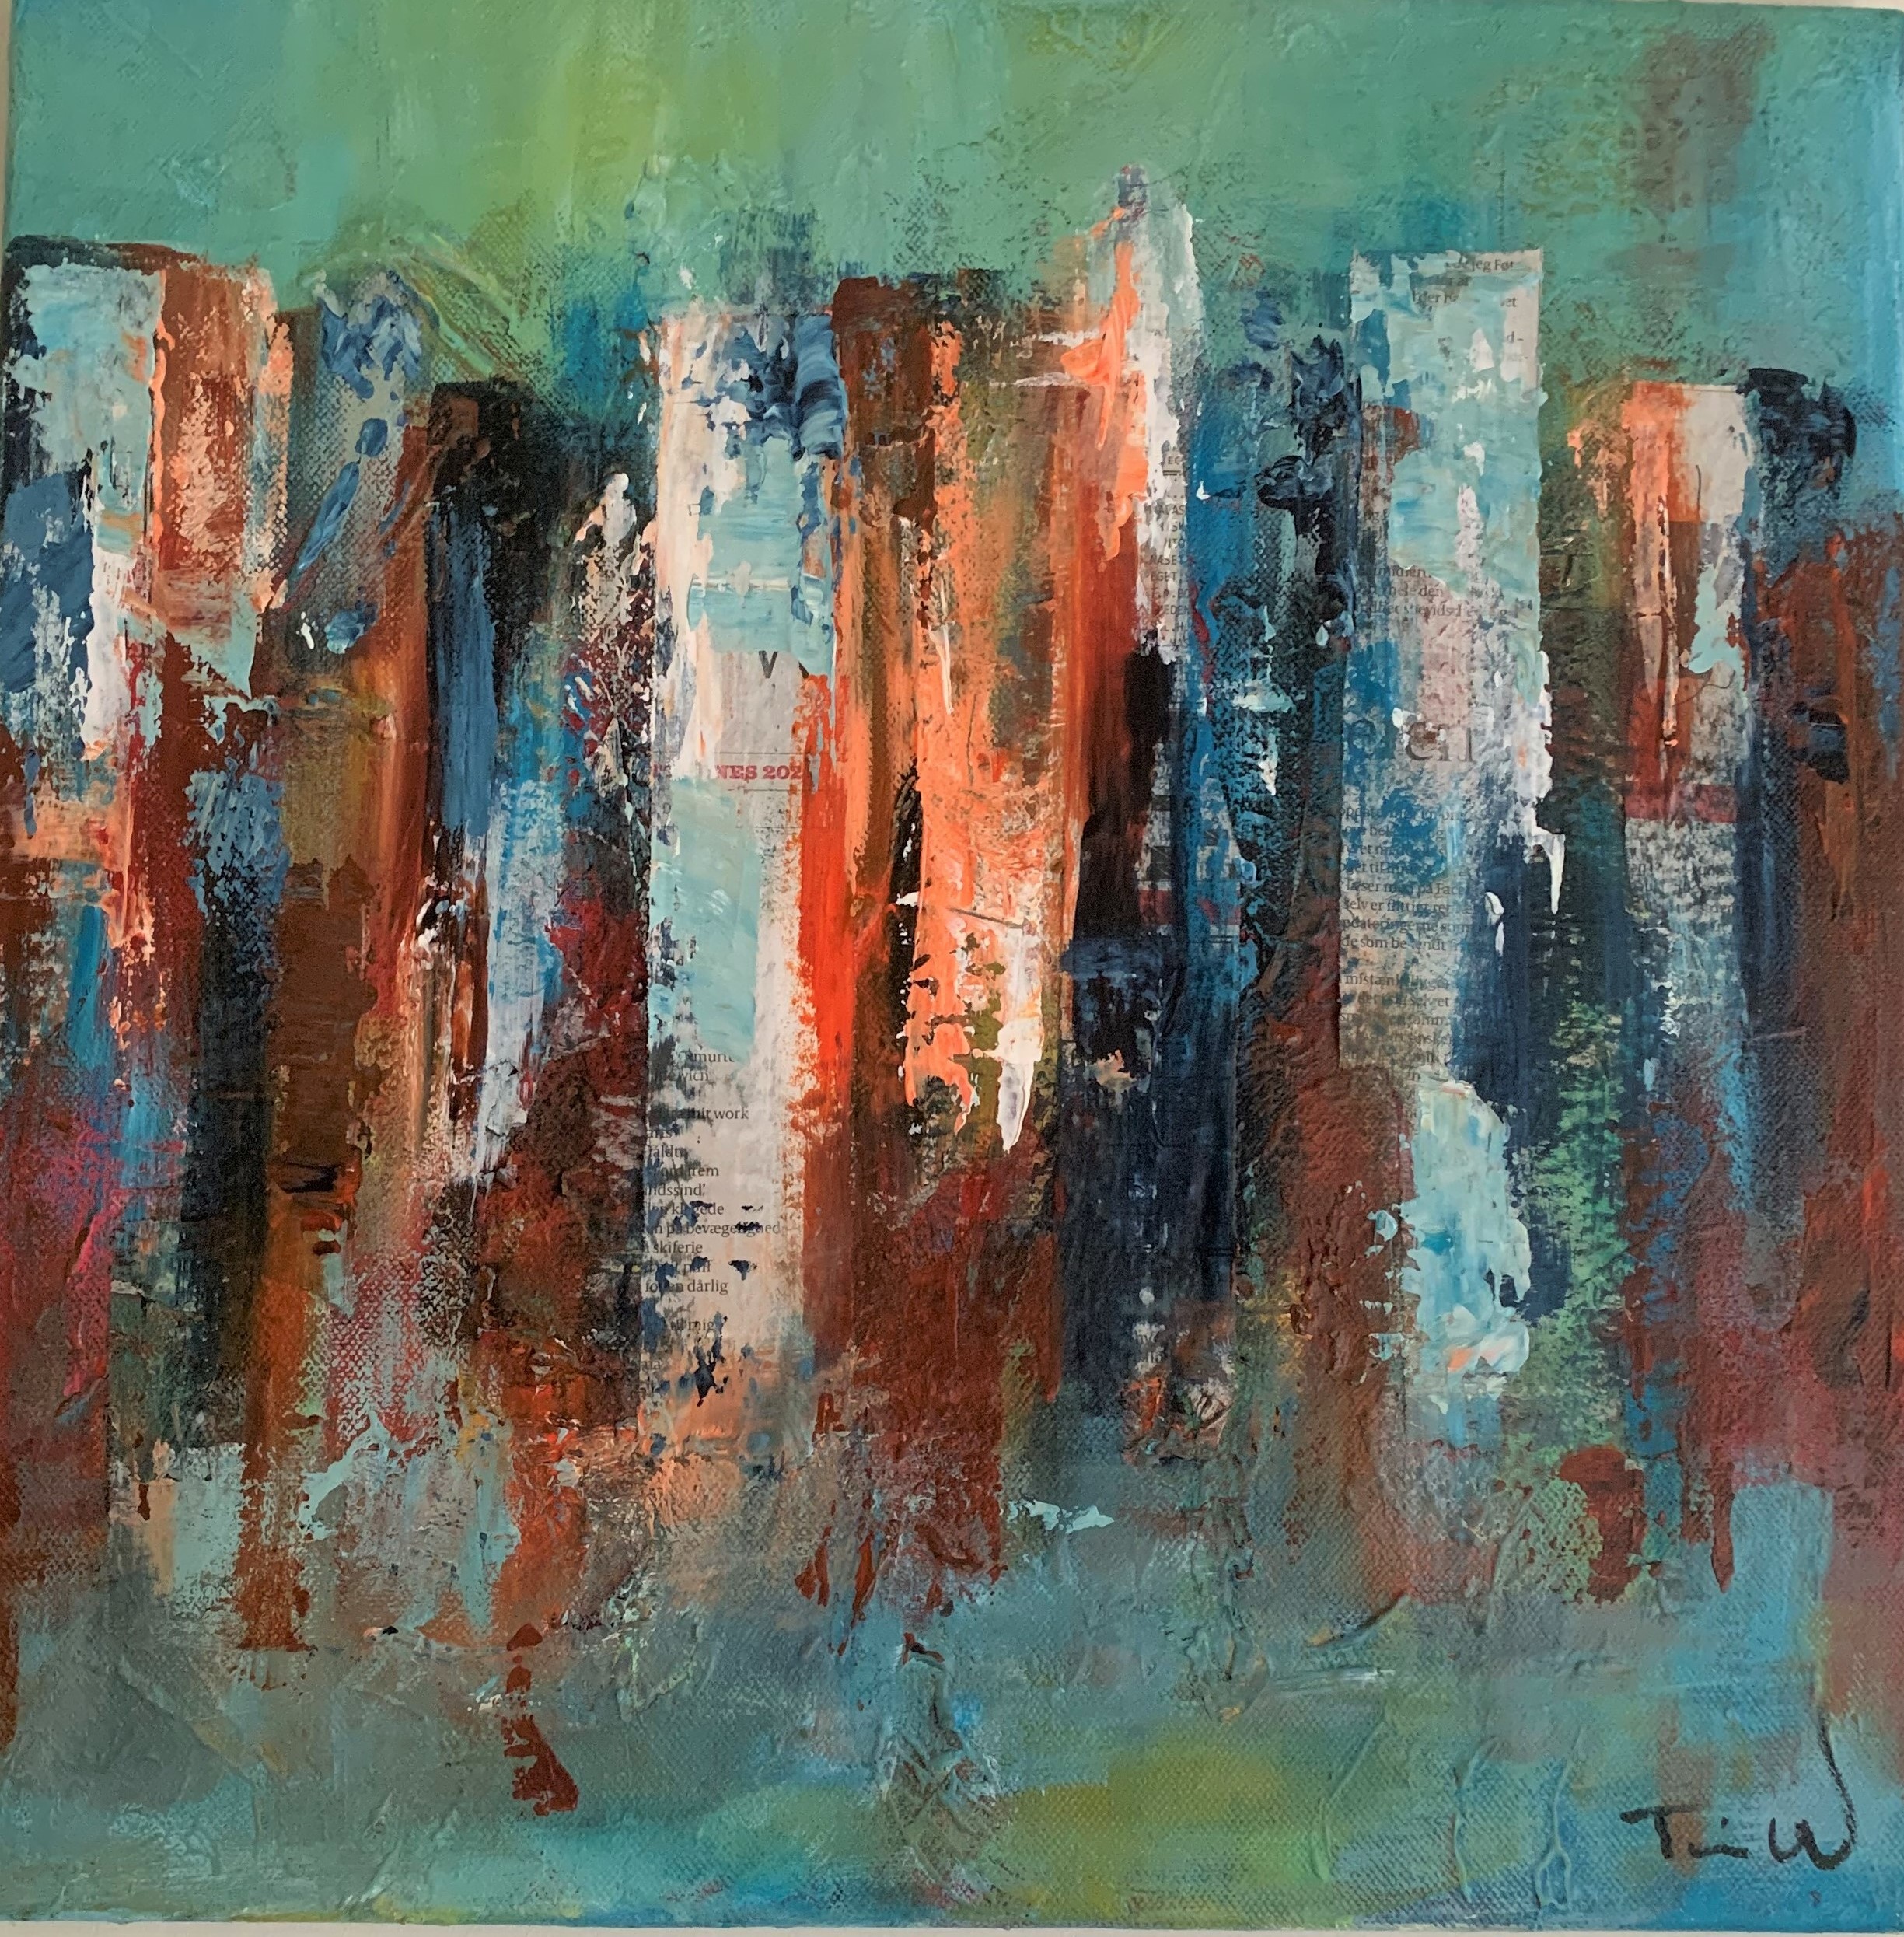 Jordfarverne er kombineret i dette abstrakte maleri, som kan få tankerne hen på en skyline fra en storby.